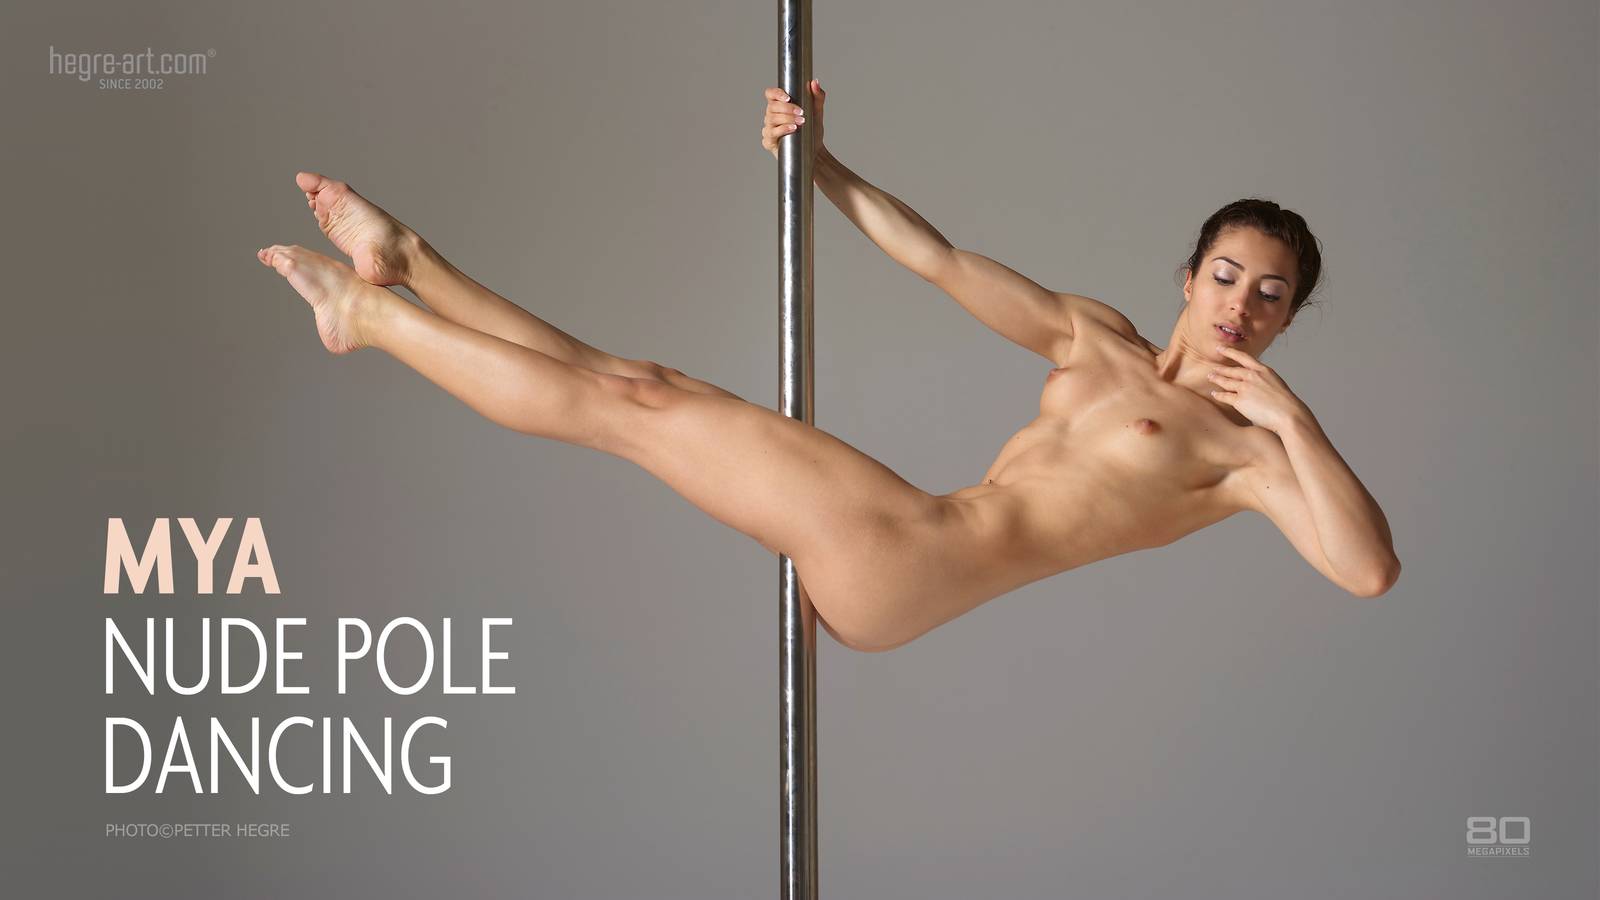 Mya Nude Pole Dancing